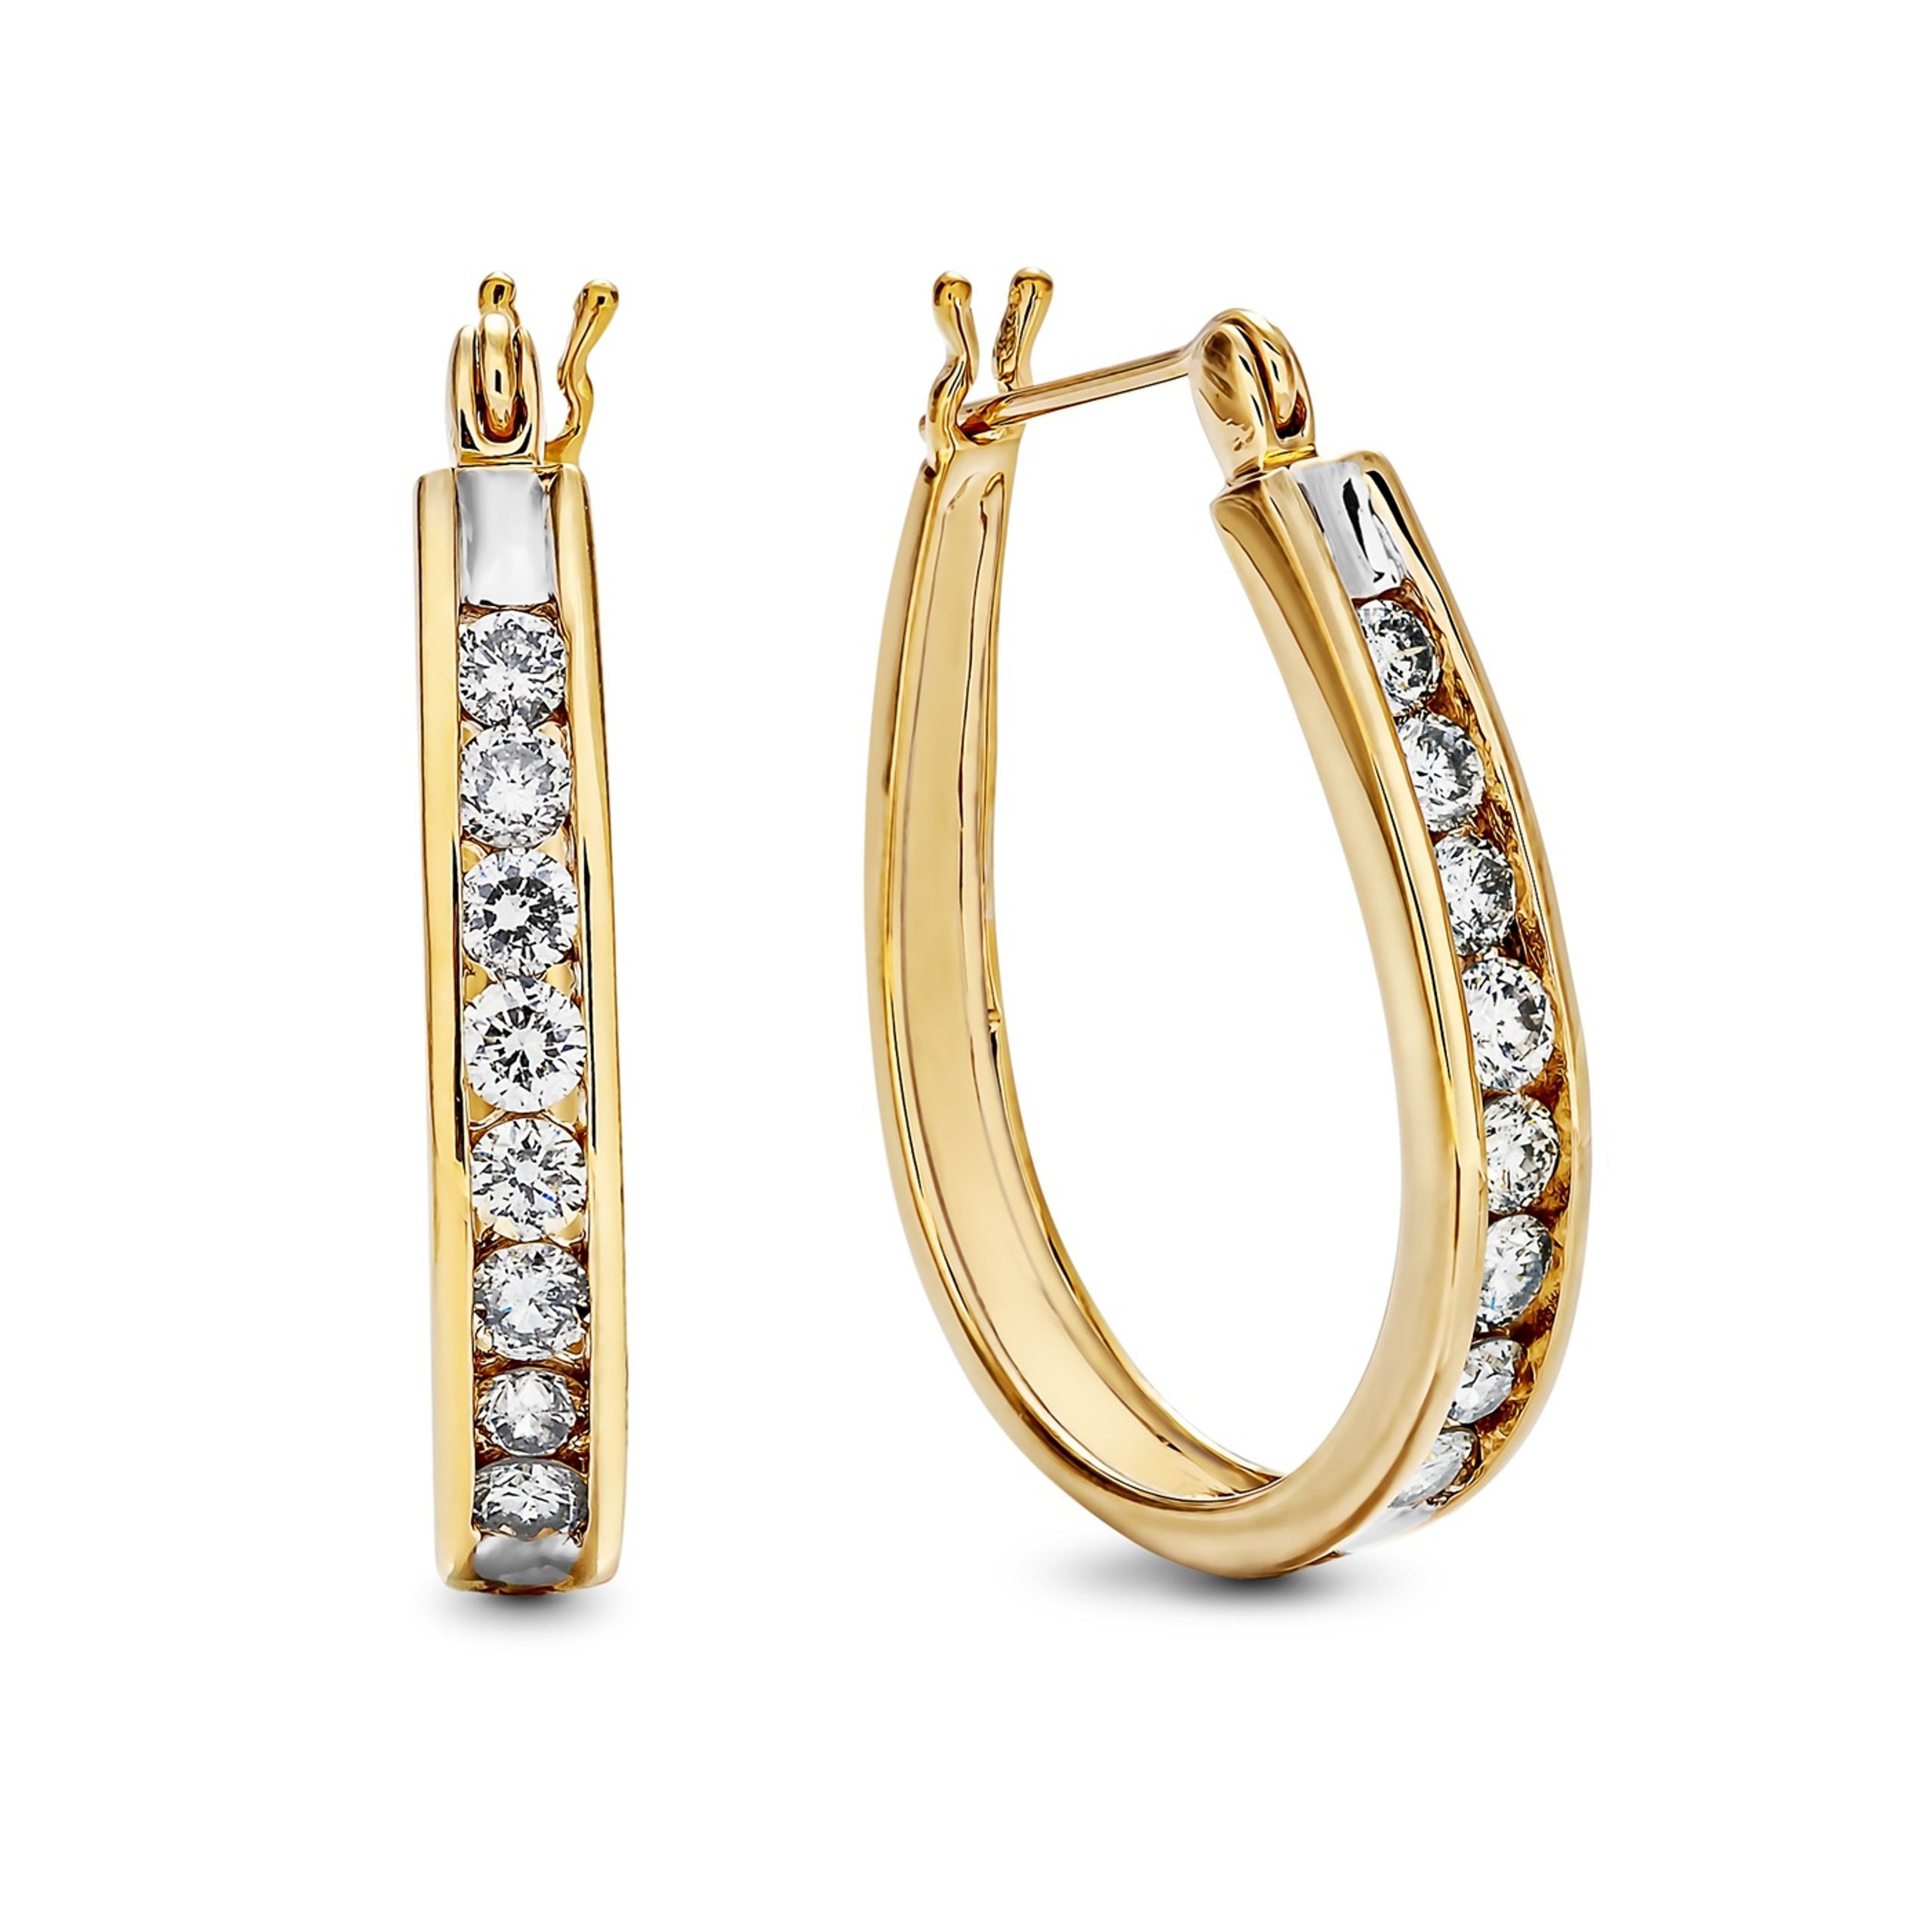 14K Yellow Gold & Channel Set Diamond Hoop Earrings - 1ct Diamond Hoops